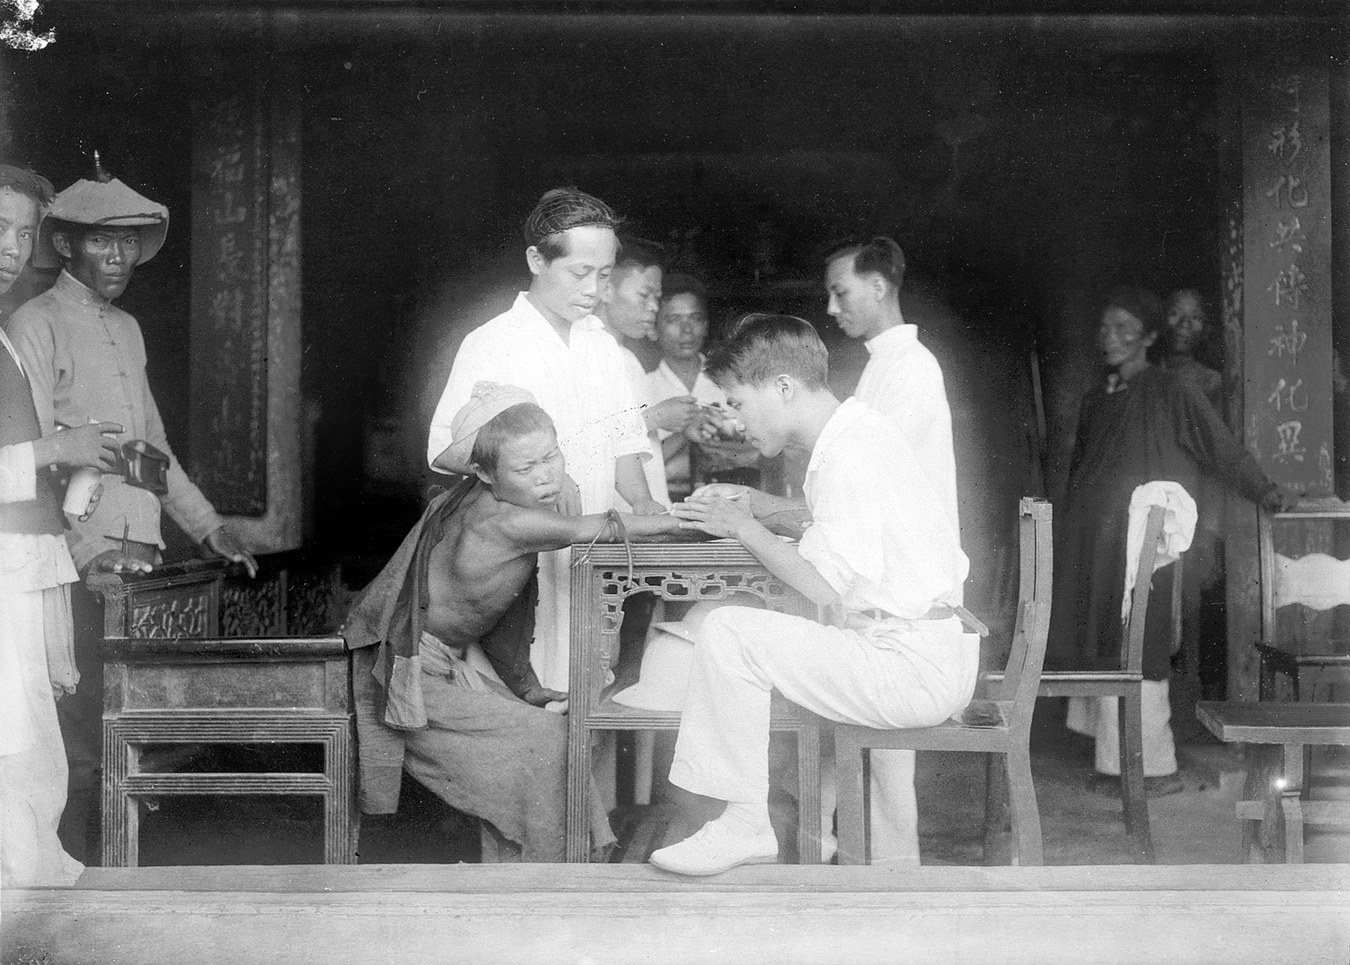 Chùm ảnh: Cảnh tiêm chủng ở Việt Nam một thế kỷ trước